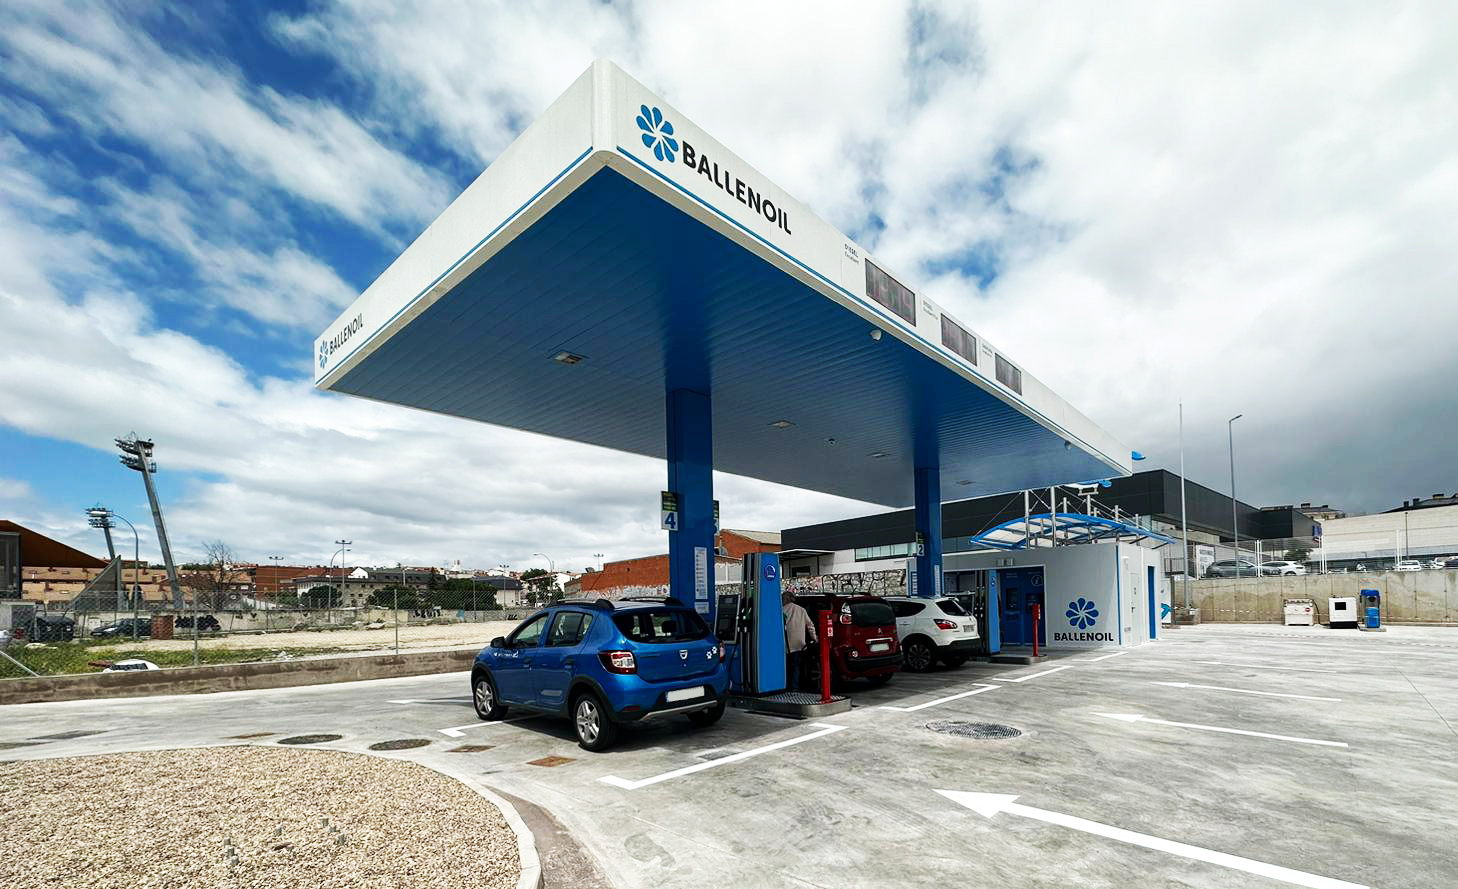 DESVELADO: Estas son las zonas más baratas para repostar gasolina en toda la provincia de Málaga, incluidas Fuengirola, Mijas y Antequera